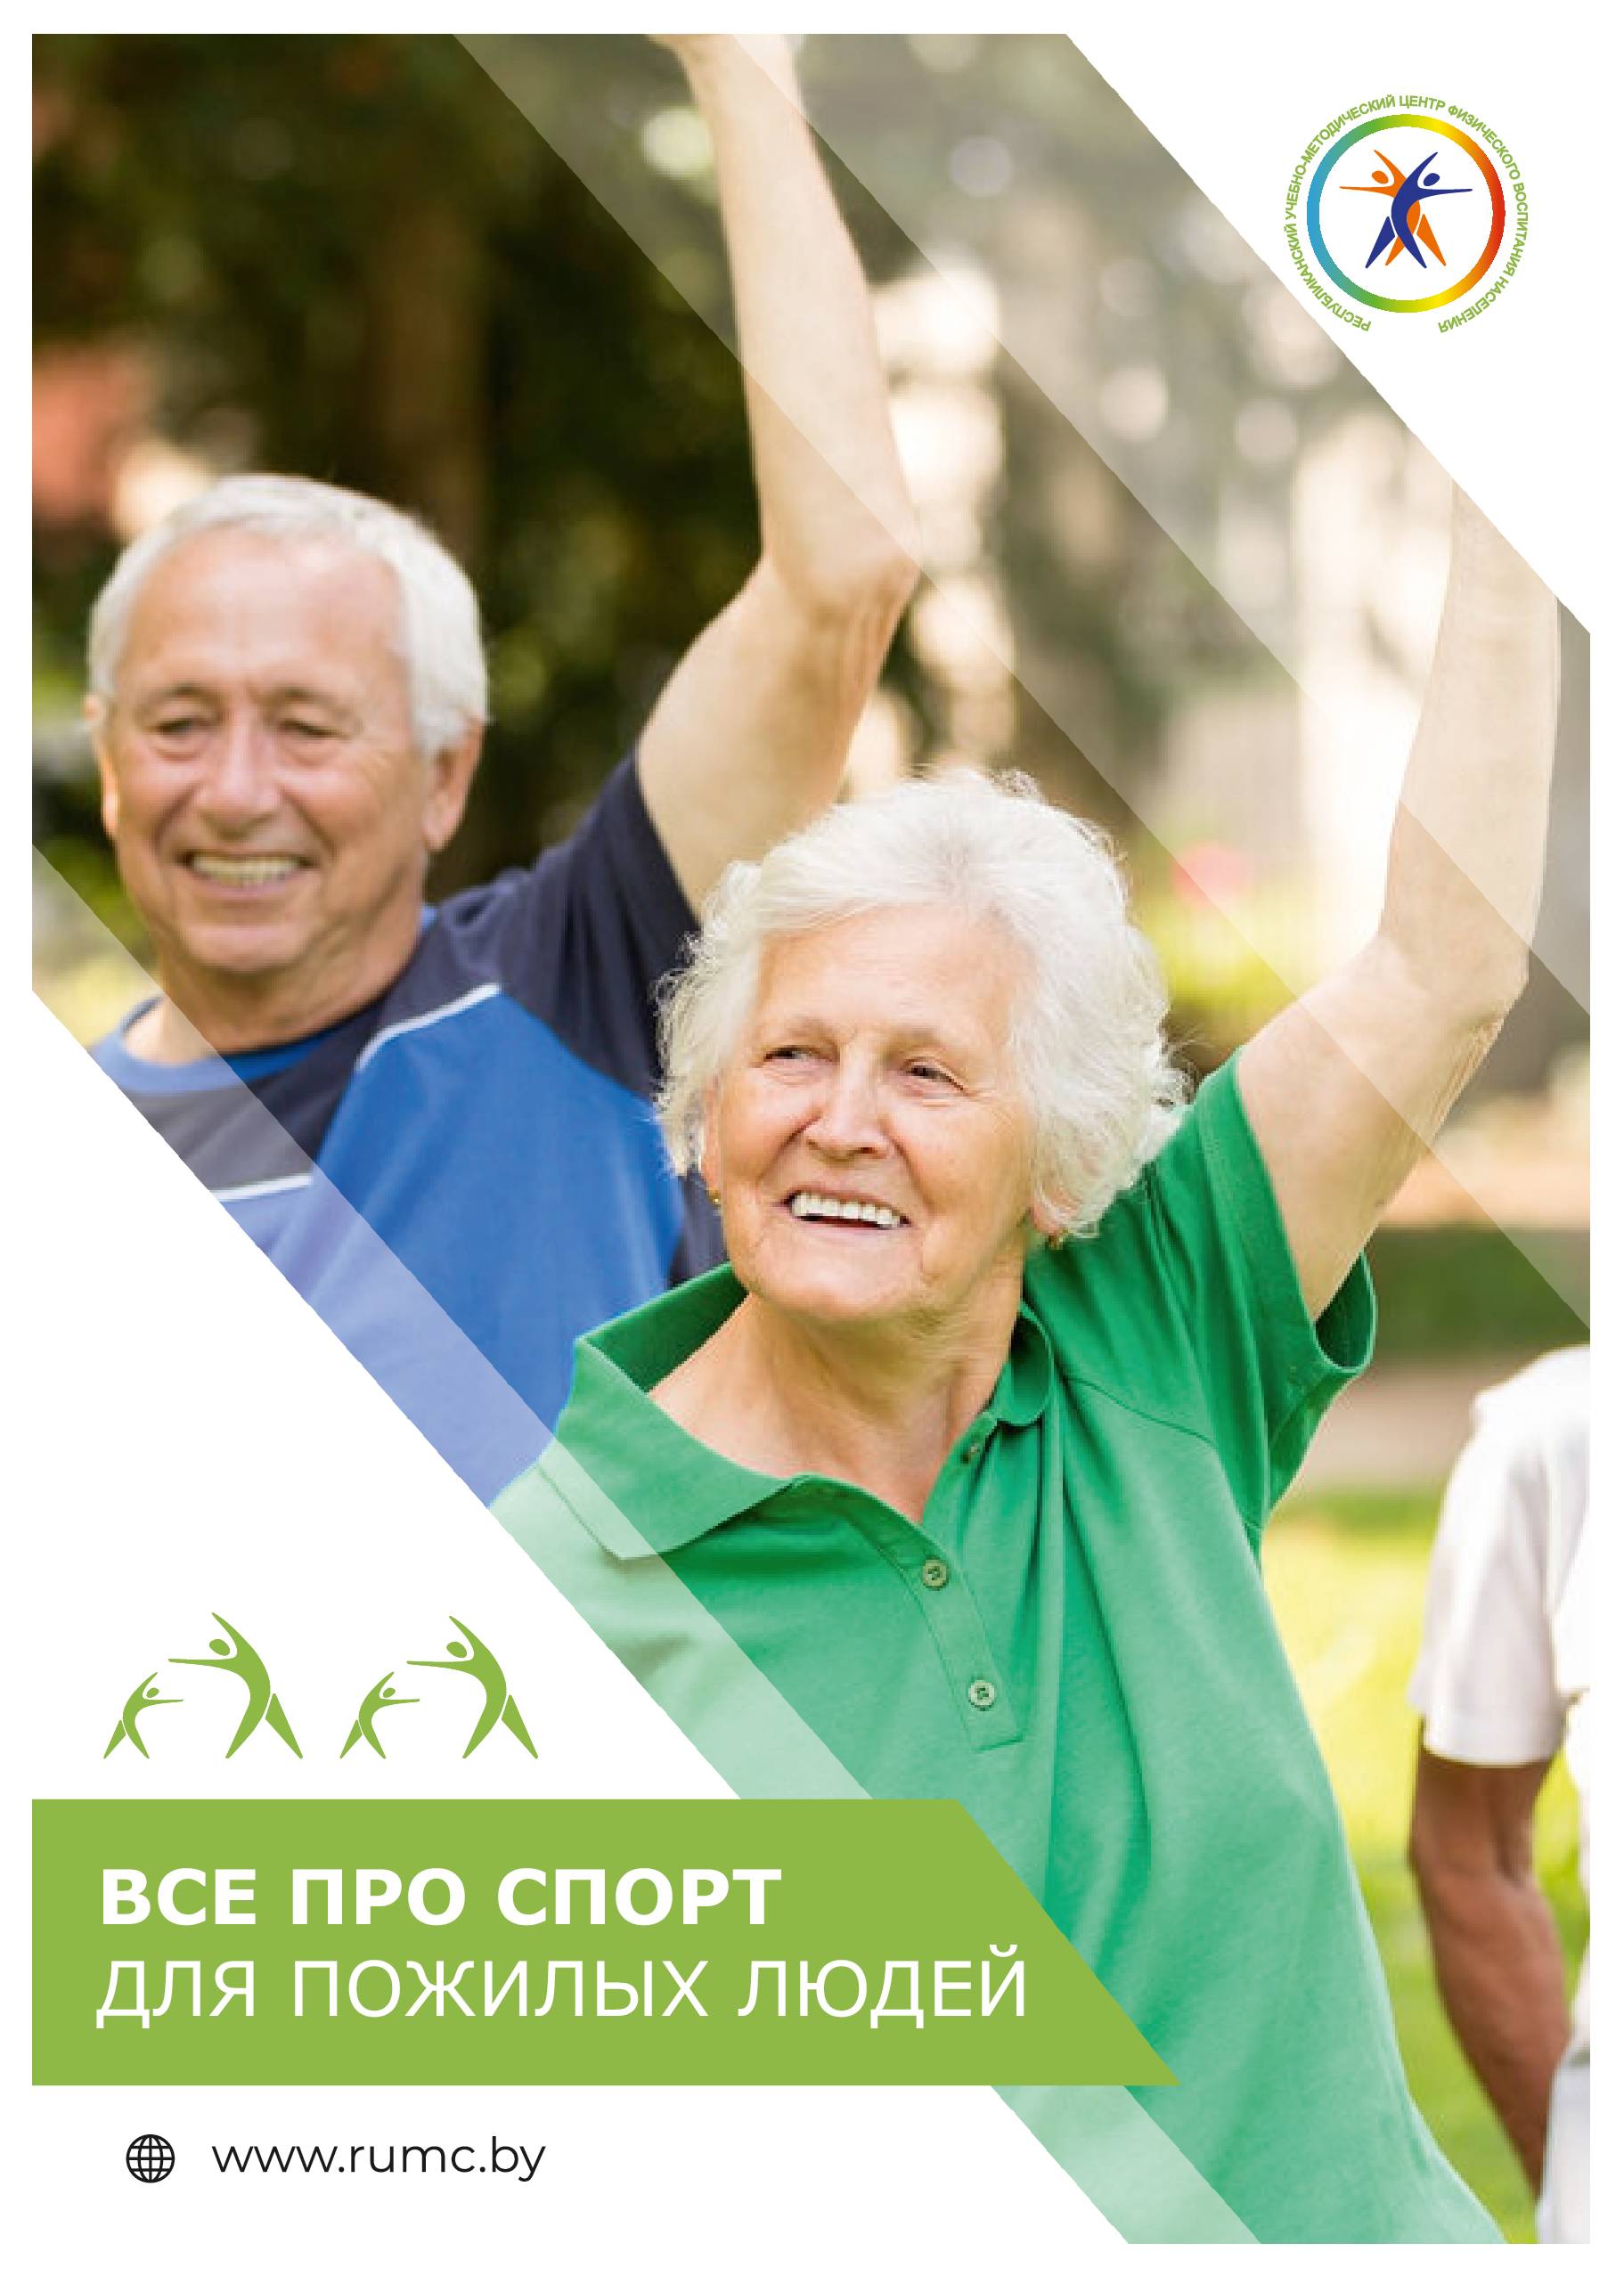 В рамках активного долголетия. Пожилые люди спорт. Спорт для пожилых. Физическая активность пожилых людей. Пожилые активное долголетие.